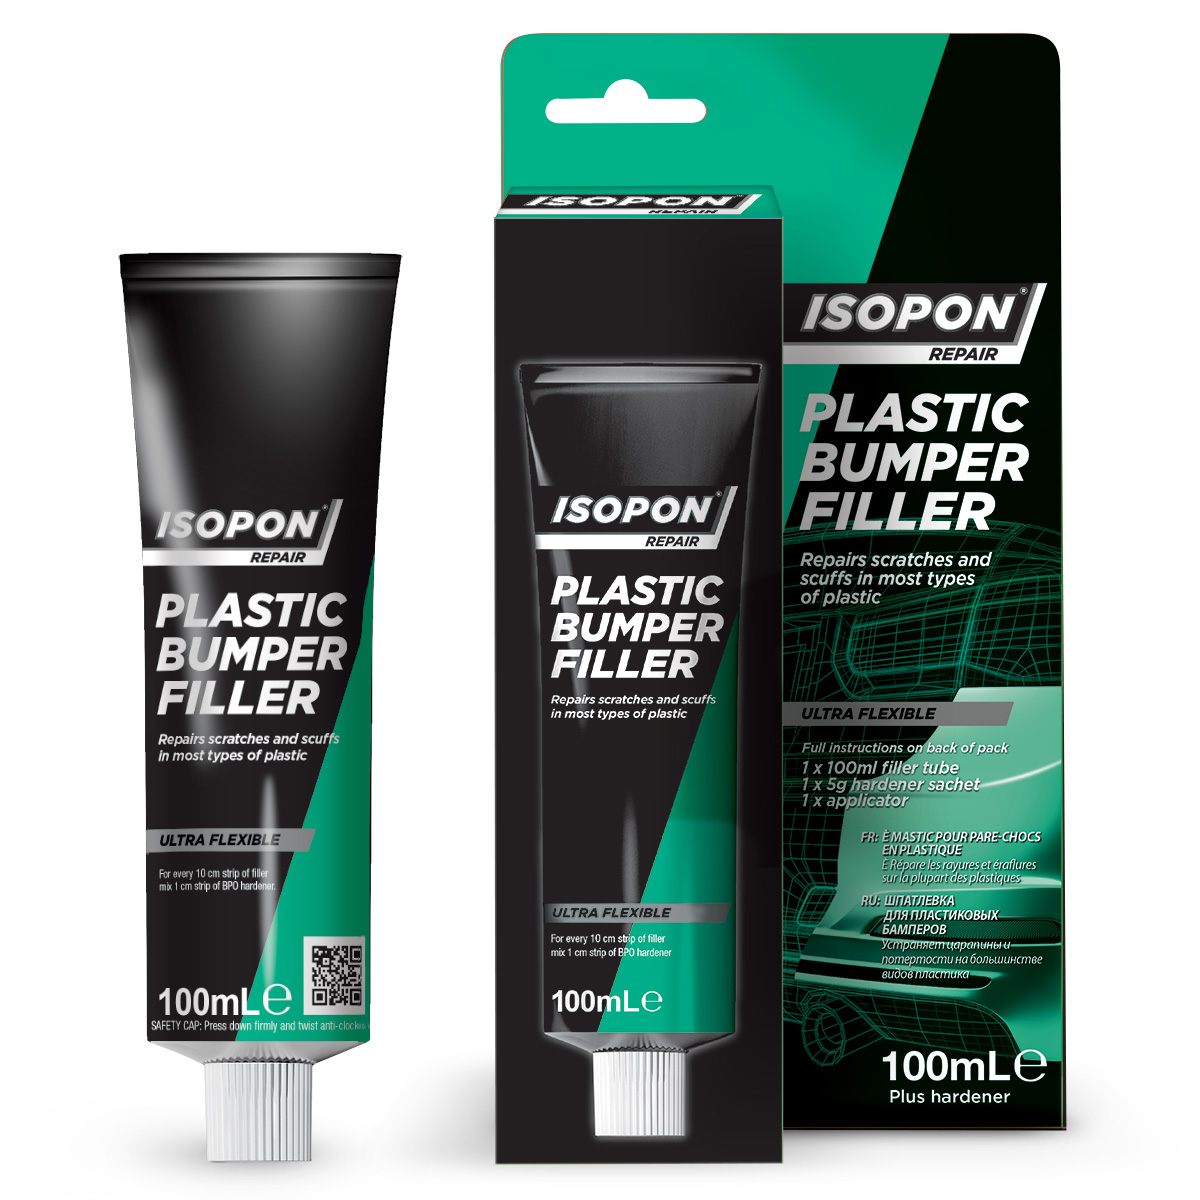 ISOPON FiberGlass Repair Kit - U-Pol